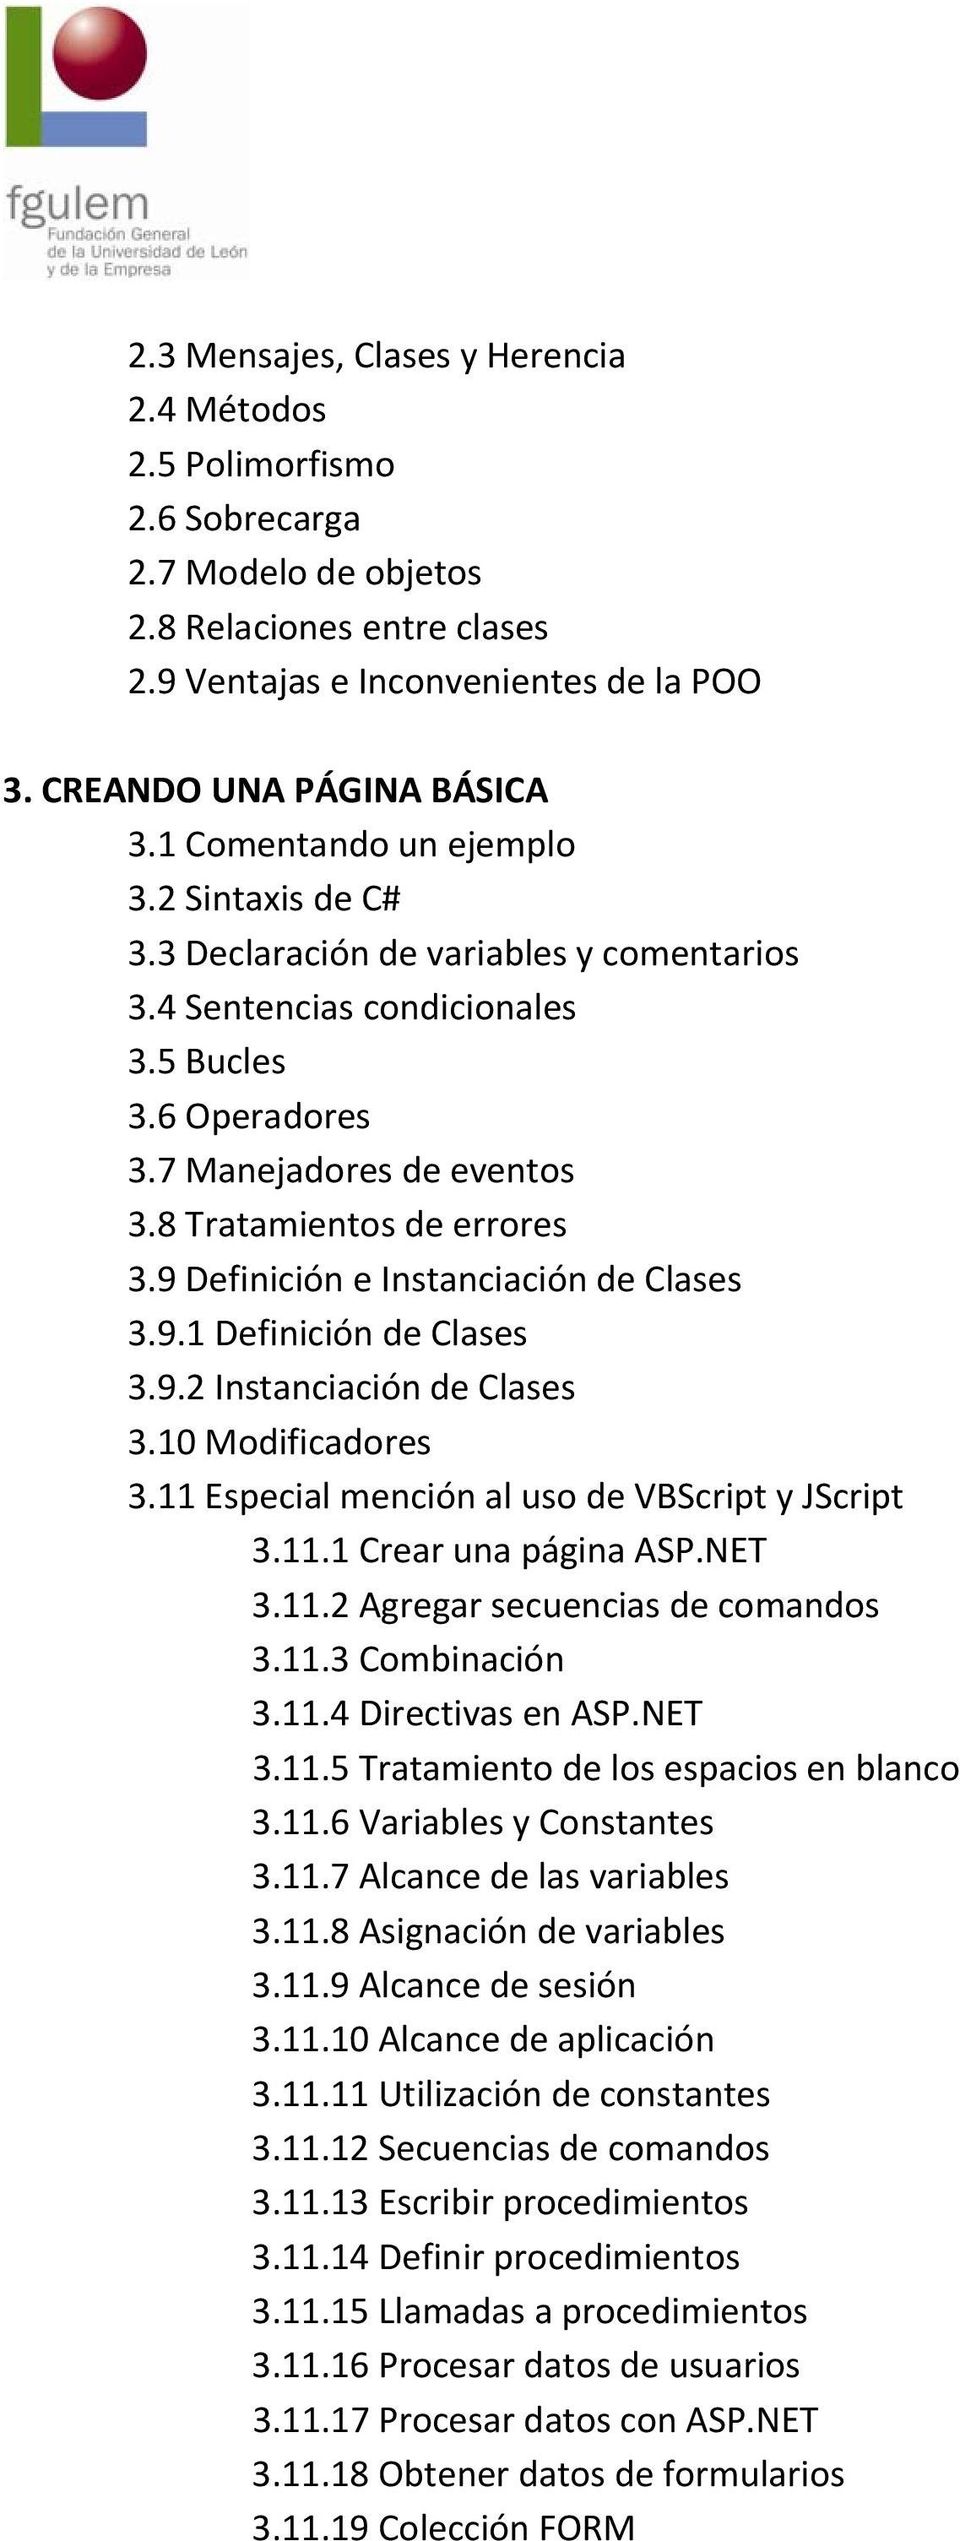 9 Definición e Instanciación de Clases 3.9.1 Definición de Clases 3.9.2 Instanciación de Clases 3.10 Modificadores 3.11 Especial mención al uso de VBScript y JScript 3.11.1 Crear una página ASP.NET 3.